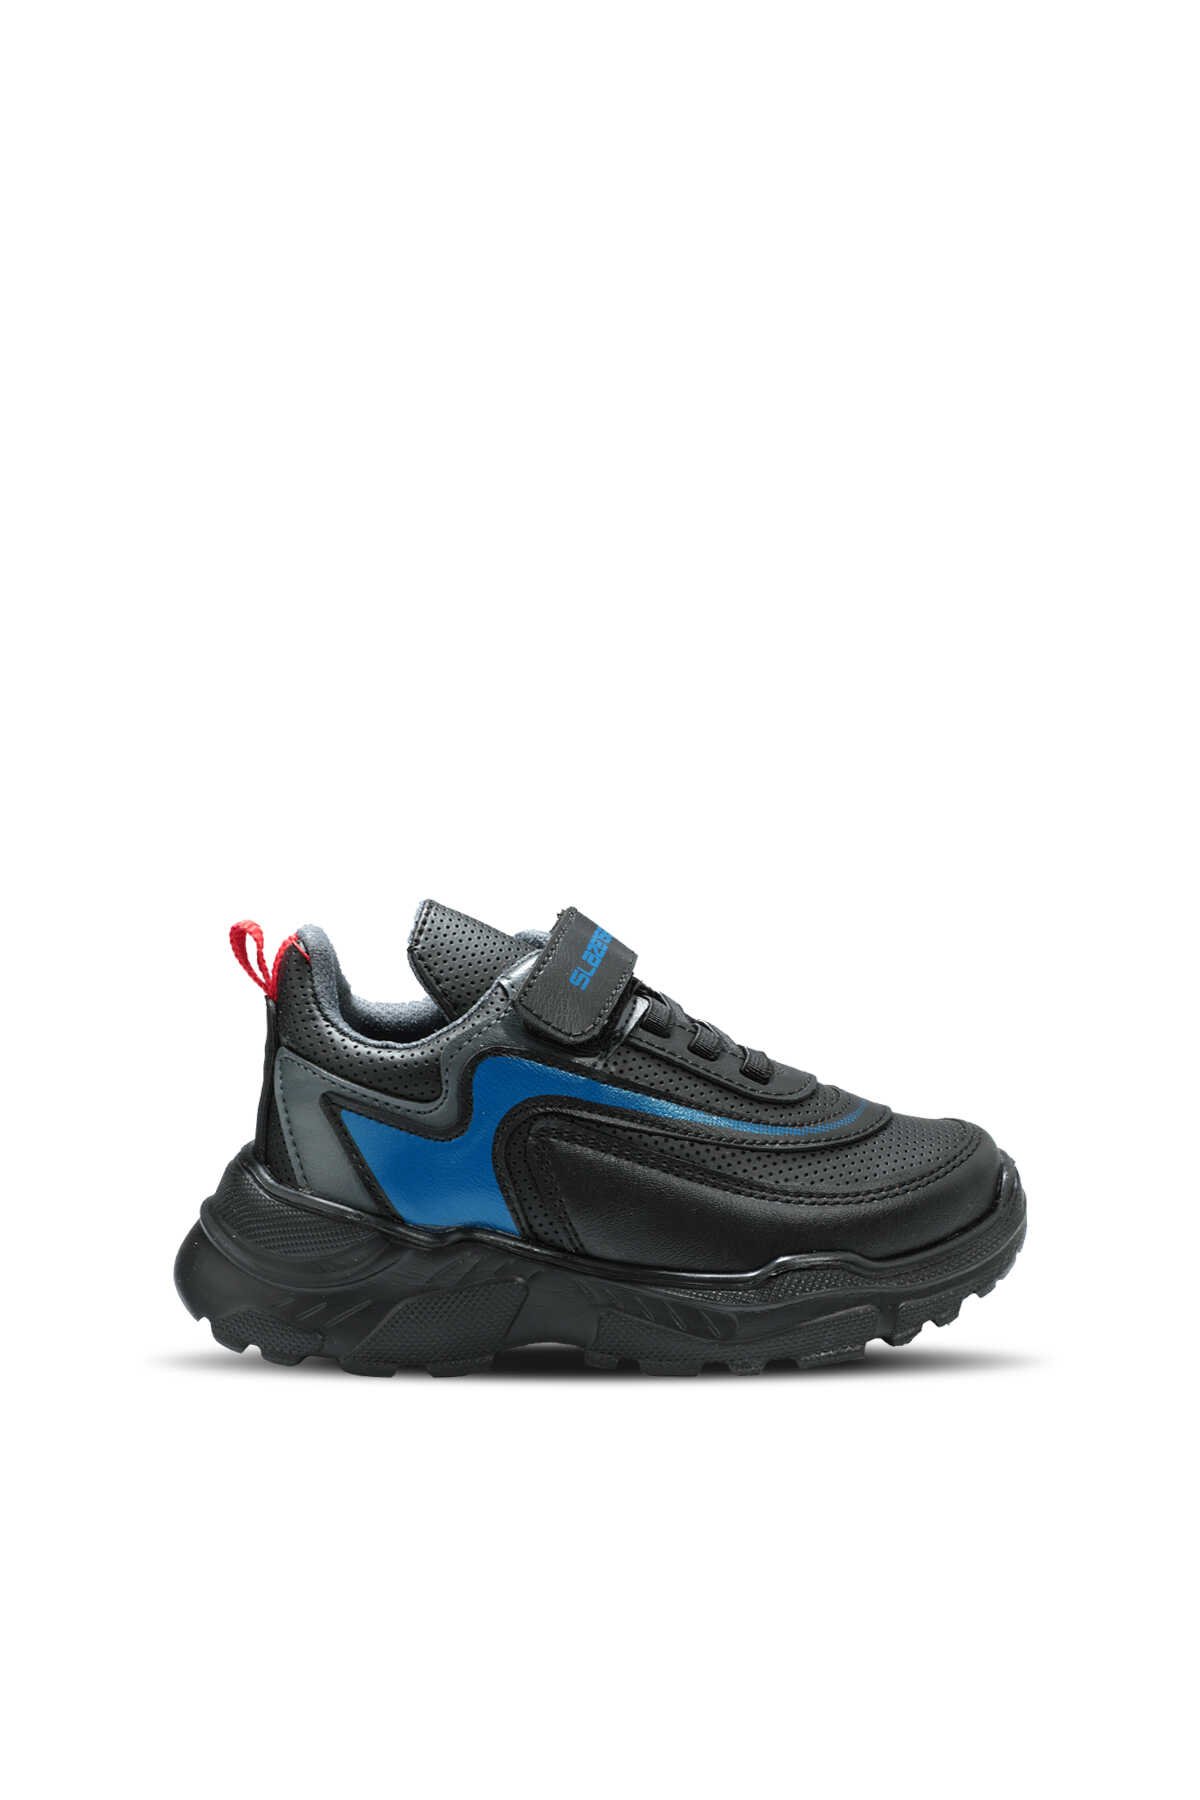 Slazenger - Slazenger KANON I Sneaker Erkek Çocuk Ayakkabı Siyah / Mavi